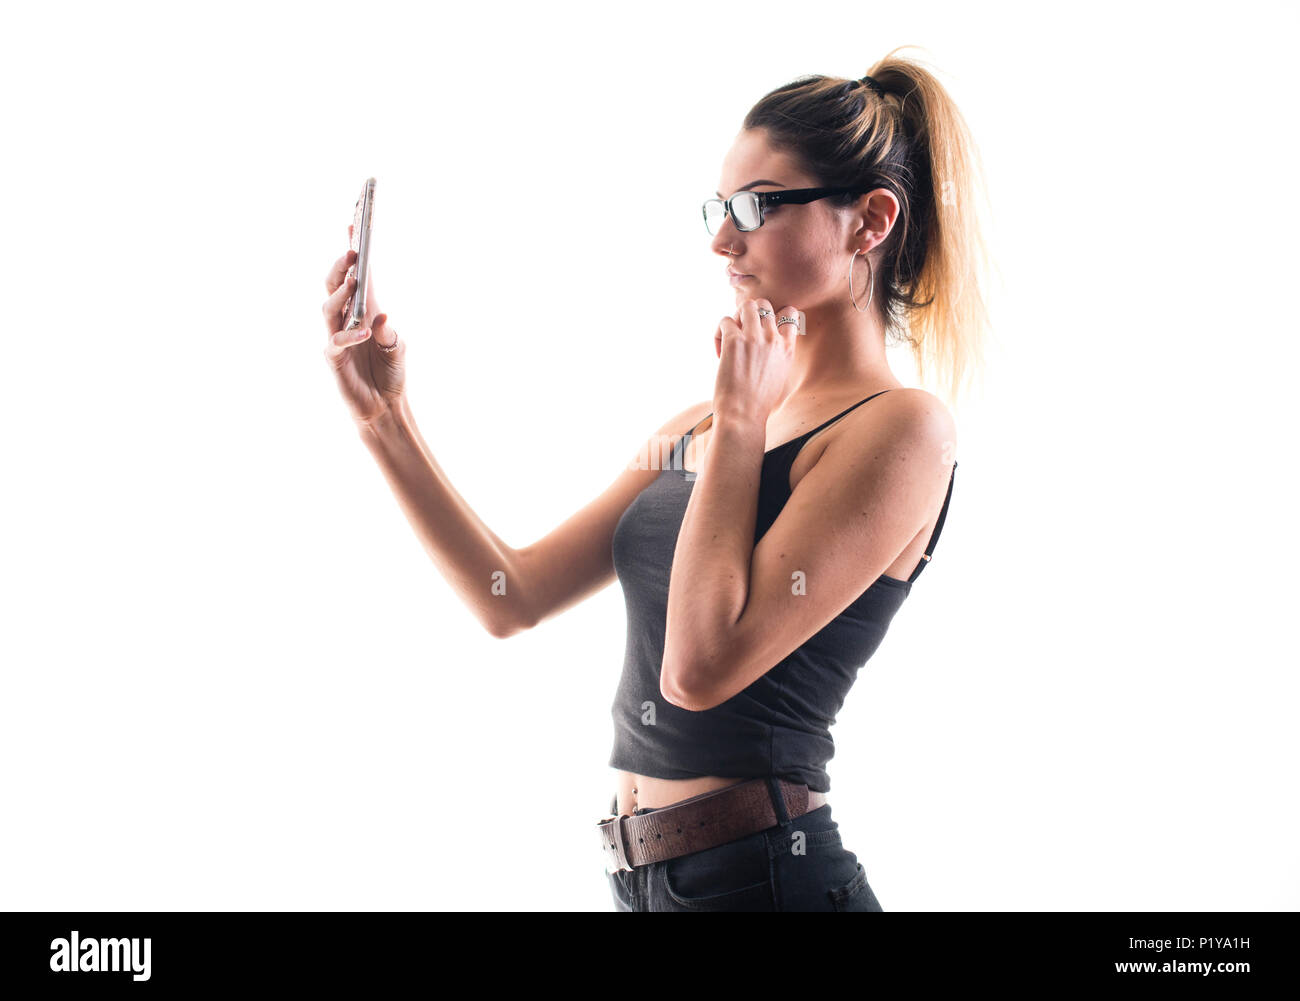 Una Joven Rubia Adolescente De A Os Teniendo Un Sexy Selfie Autorretrato Fotograf A En Su